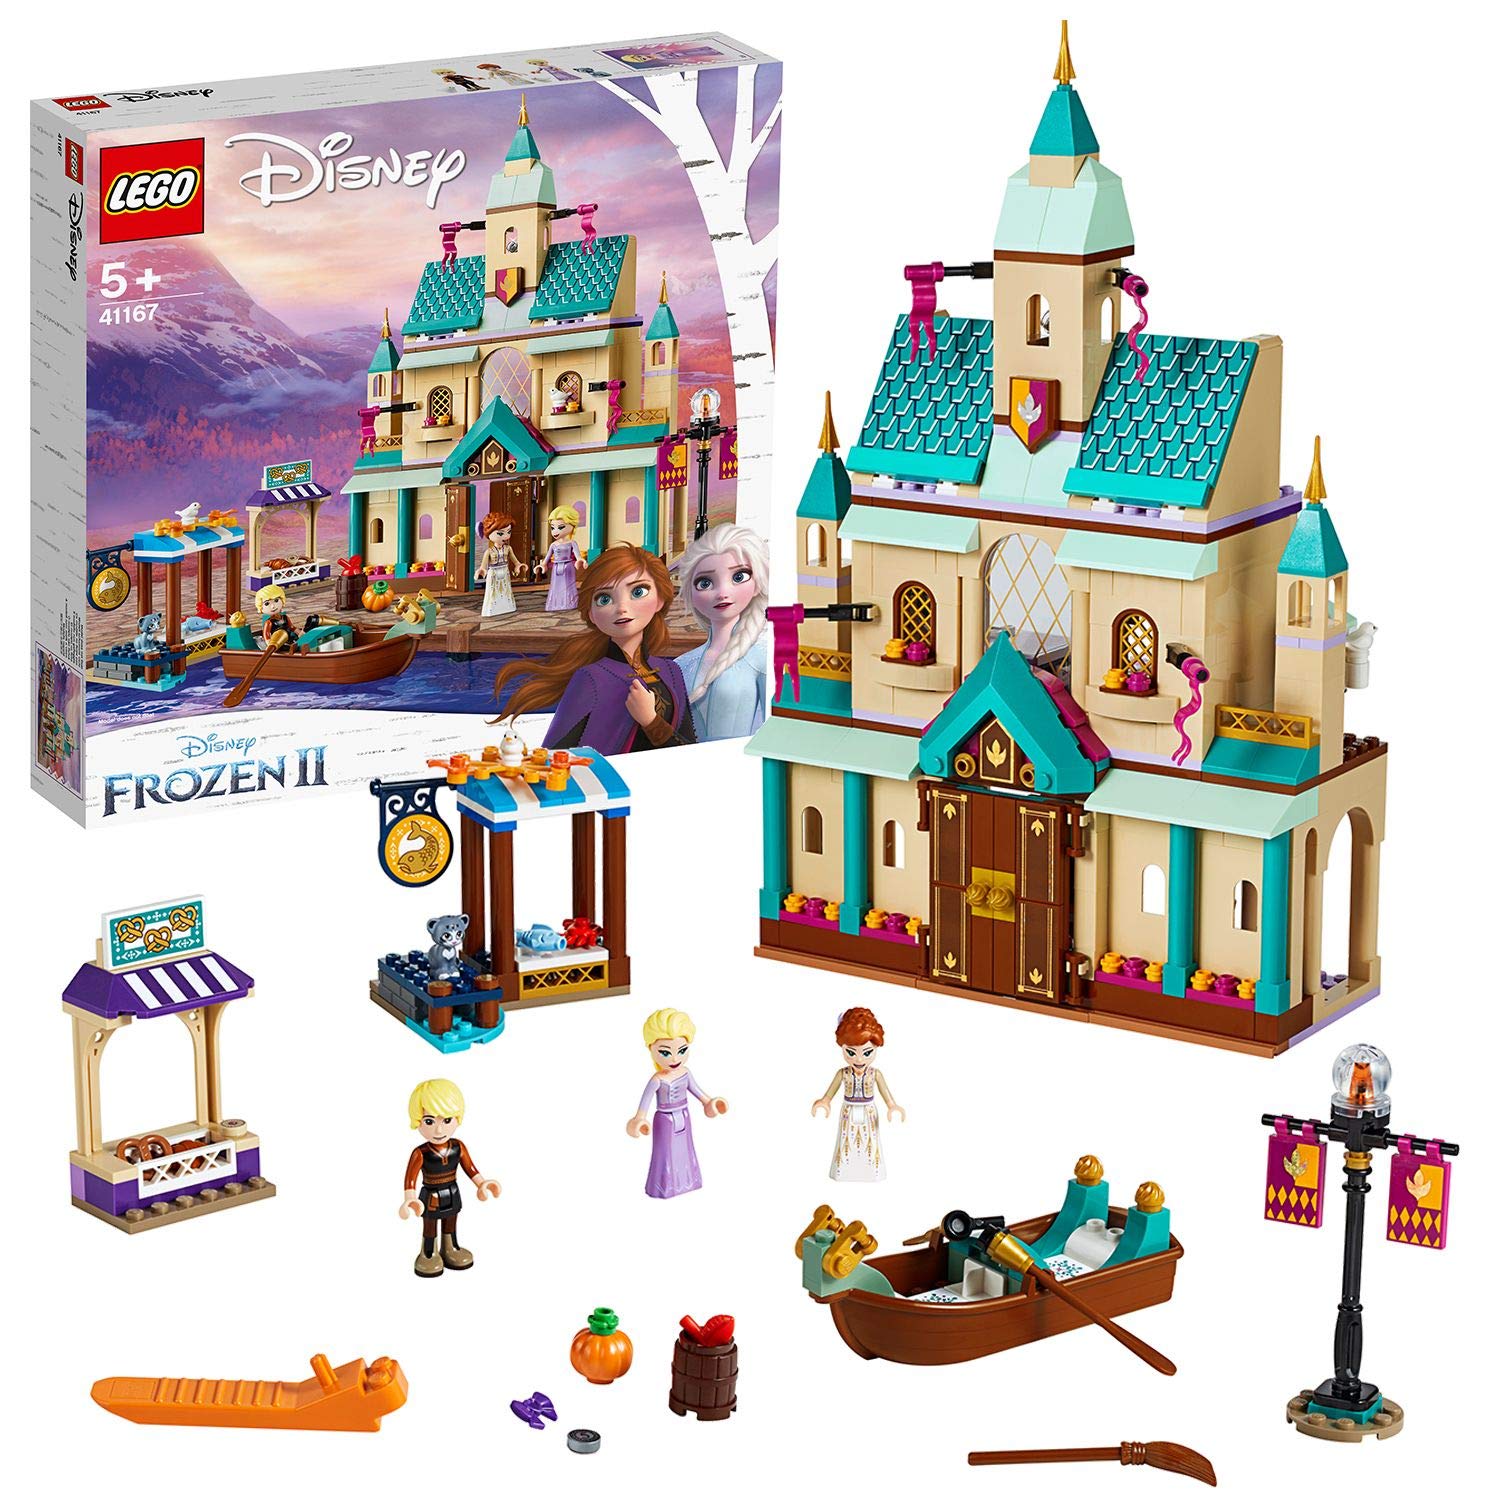 Lego 41167 Disney Arendelle Castle Construction Kit, Multi-Colour